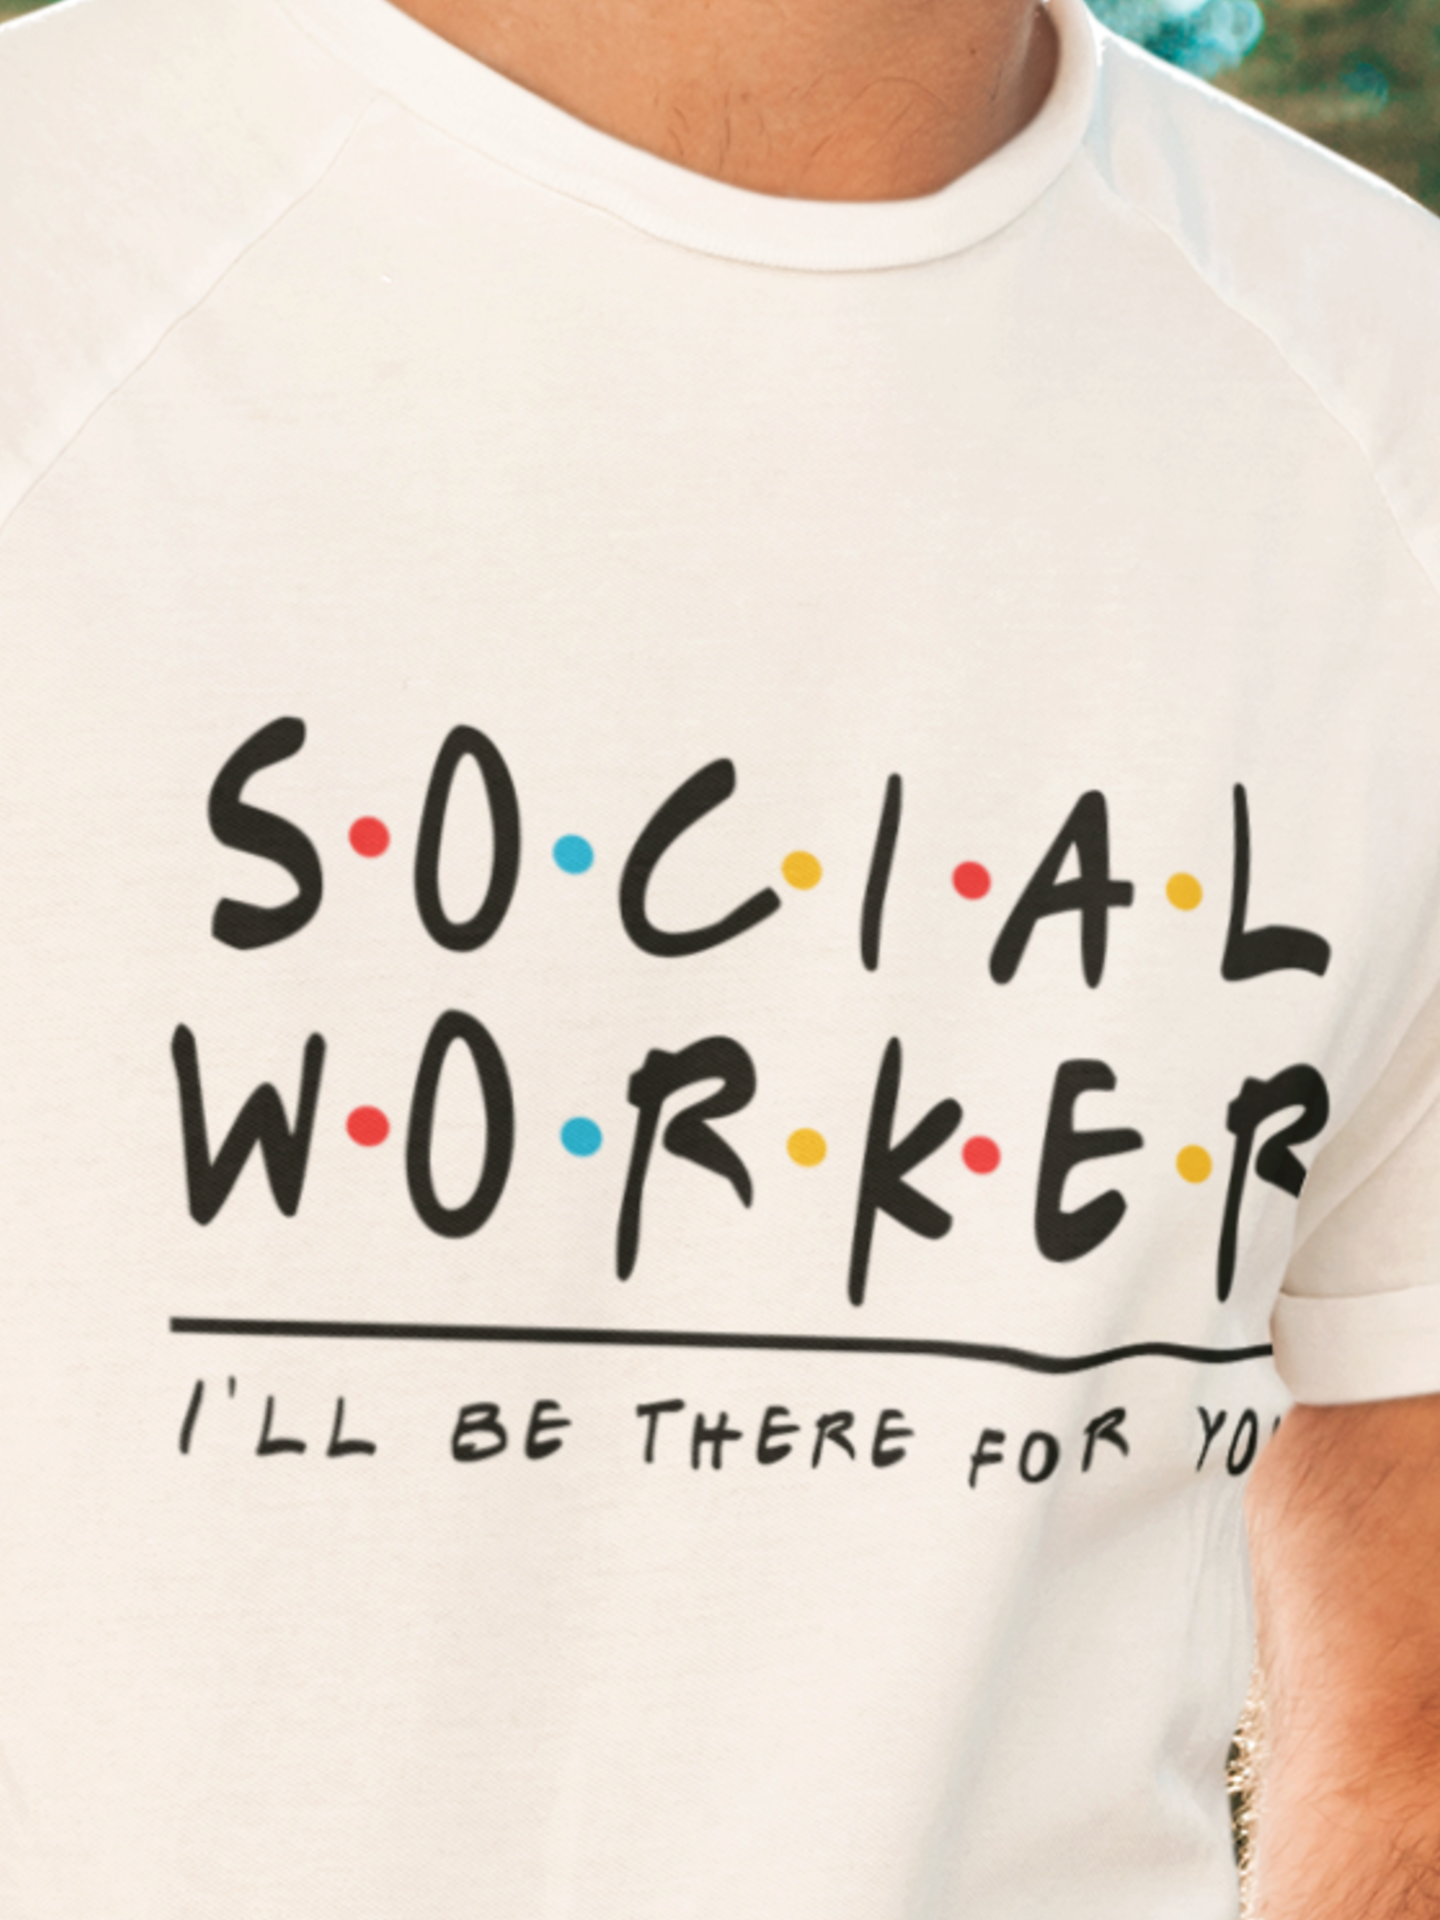 Social worker T shirt